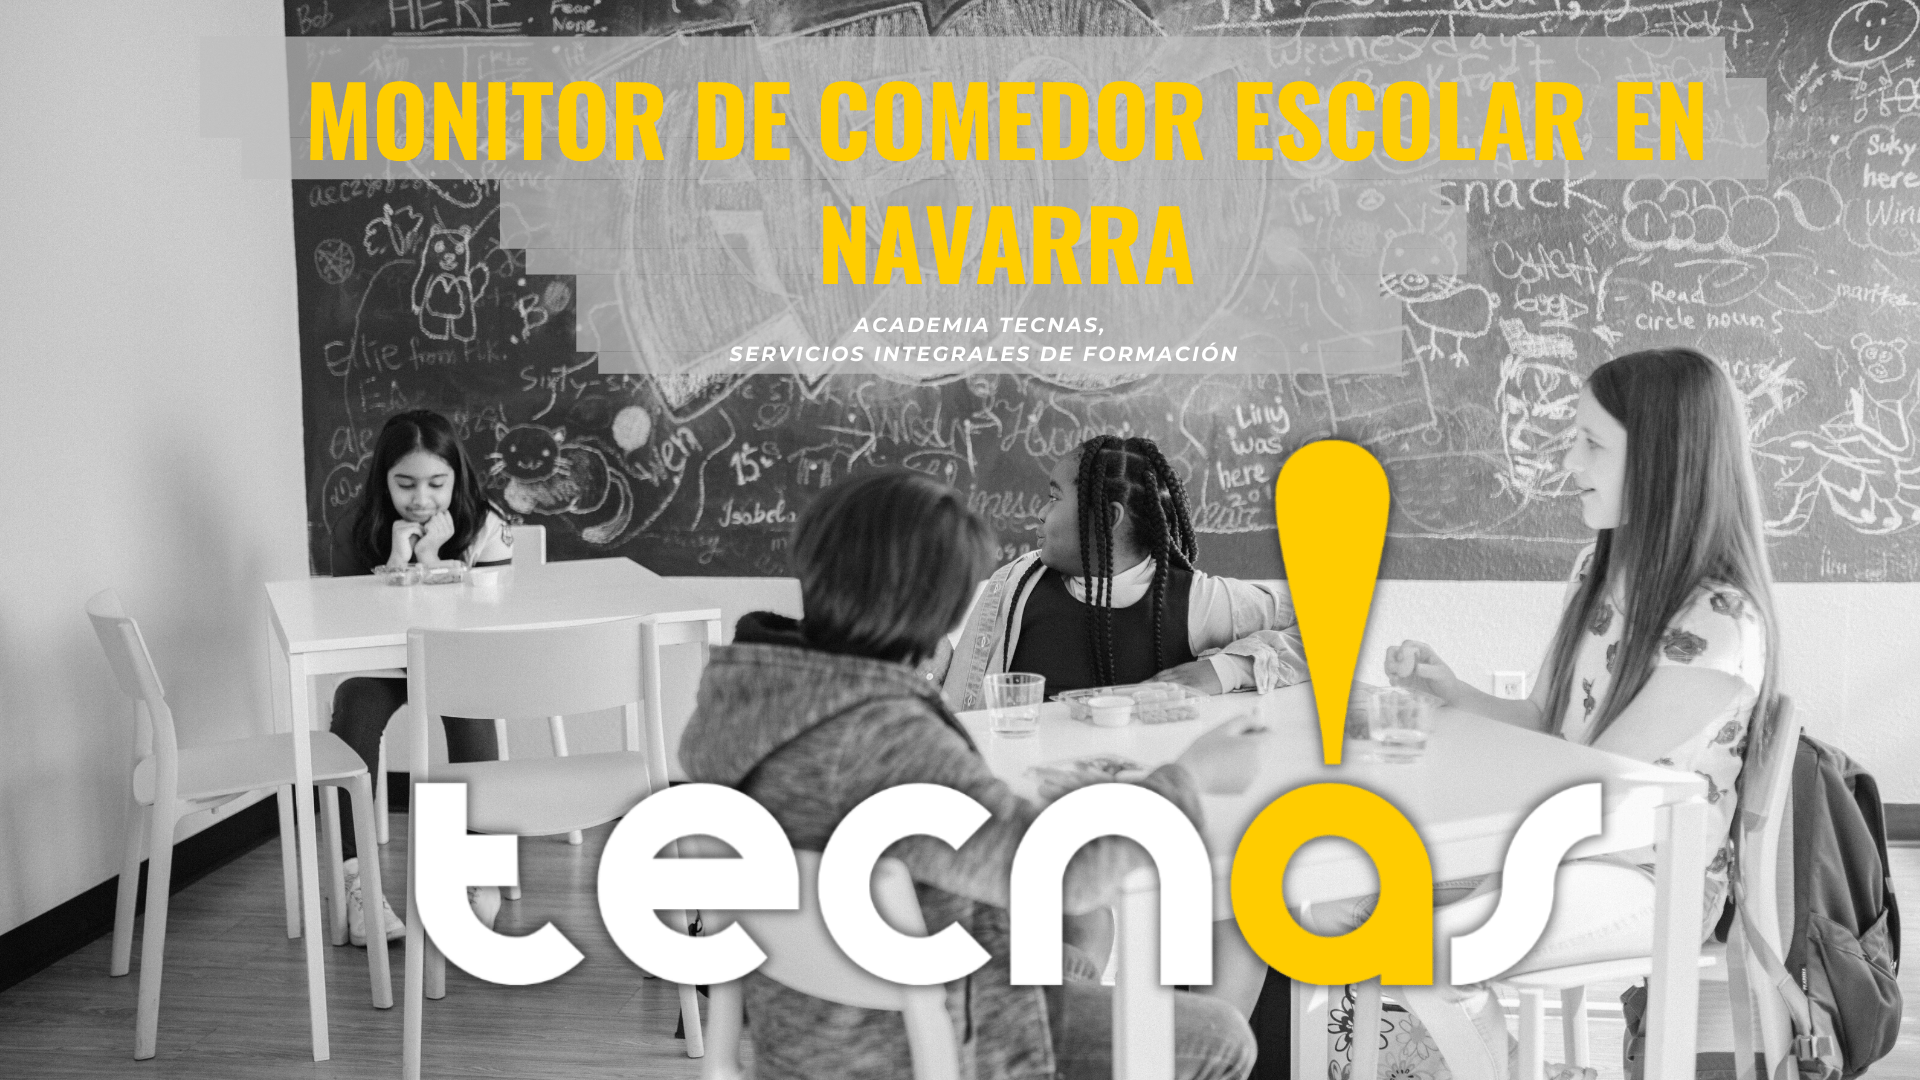 equipaje alfiler Incompatible Monitor de Comedor Escolar en Navarra | Curso Online